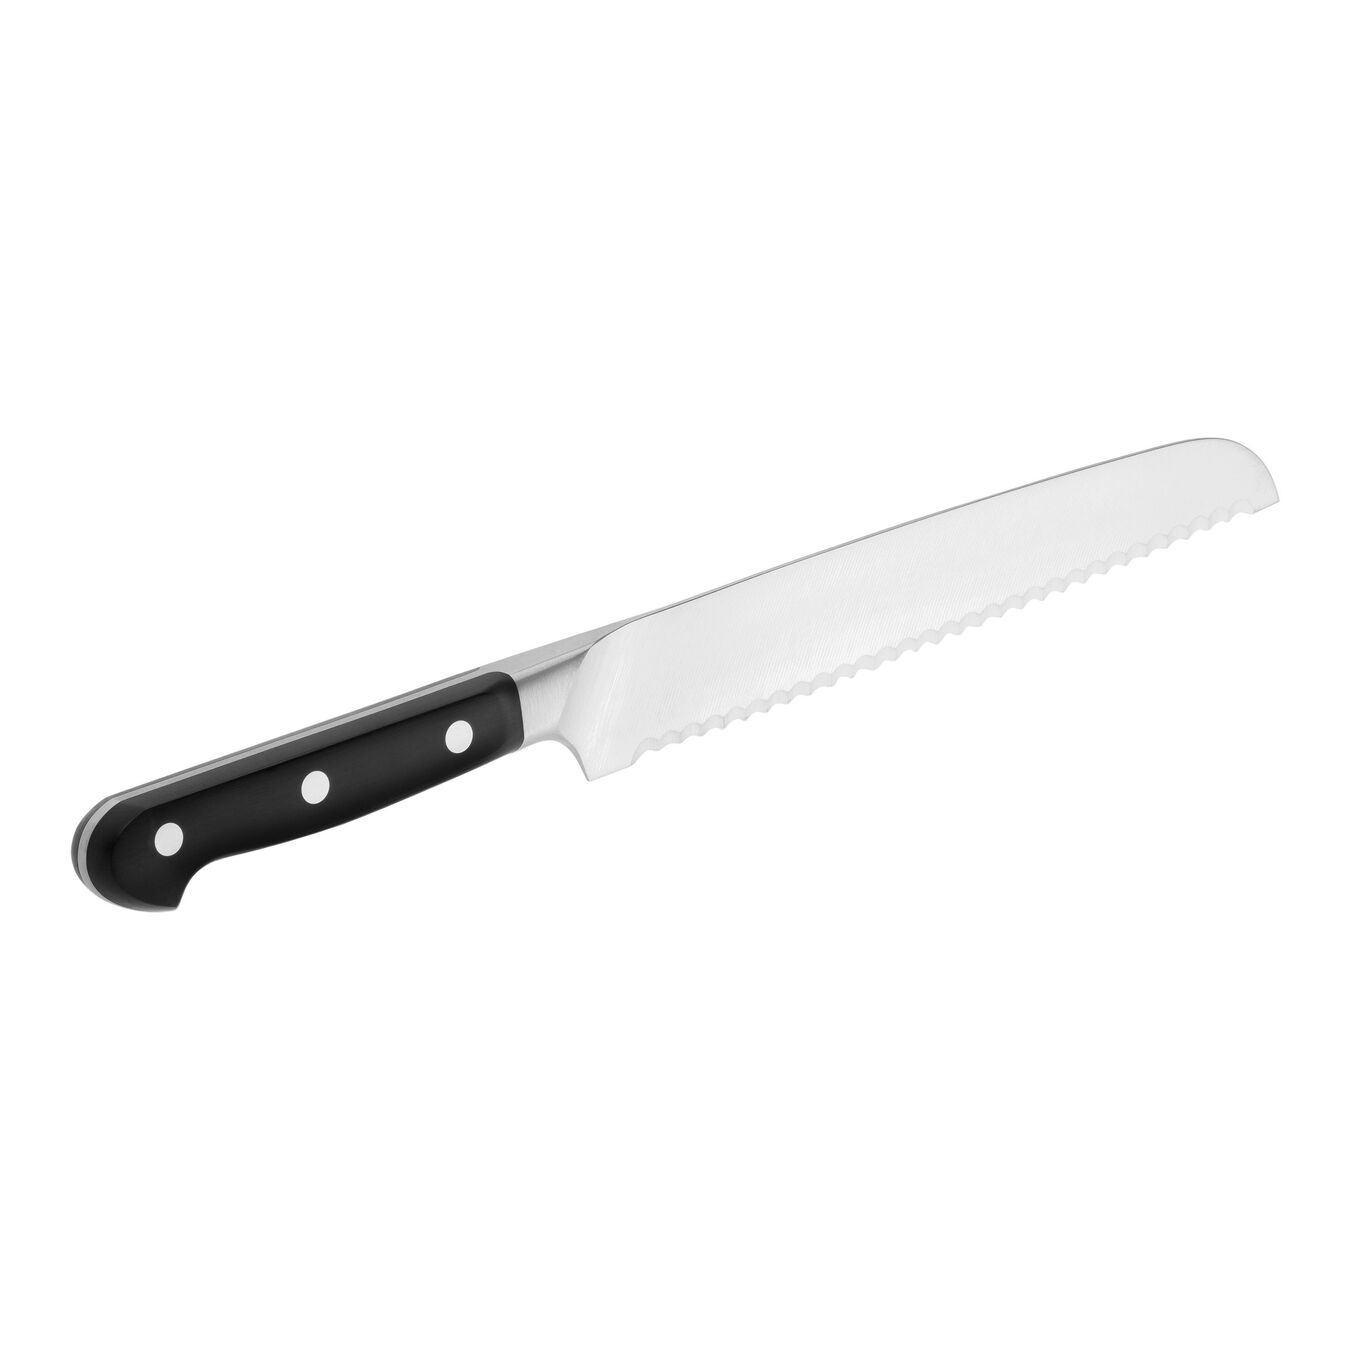 Zwilling Pro 8" Bread Knife Black